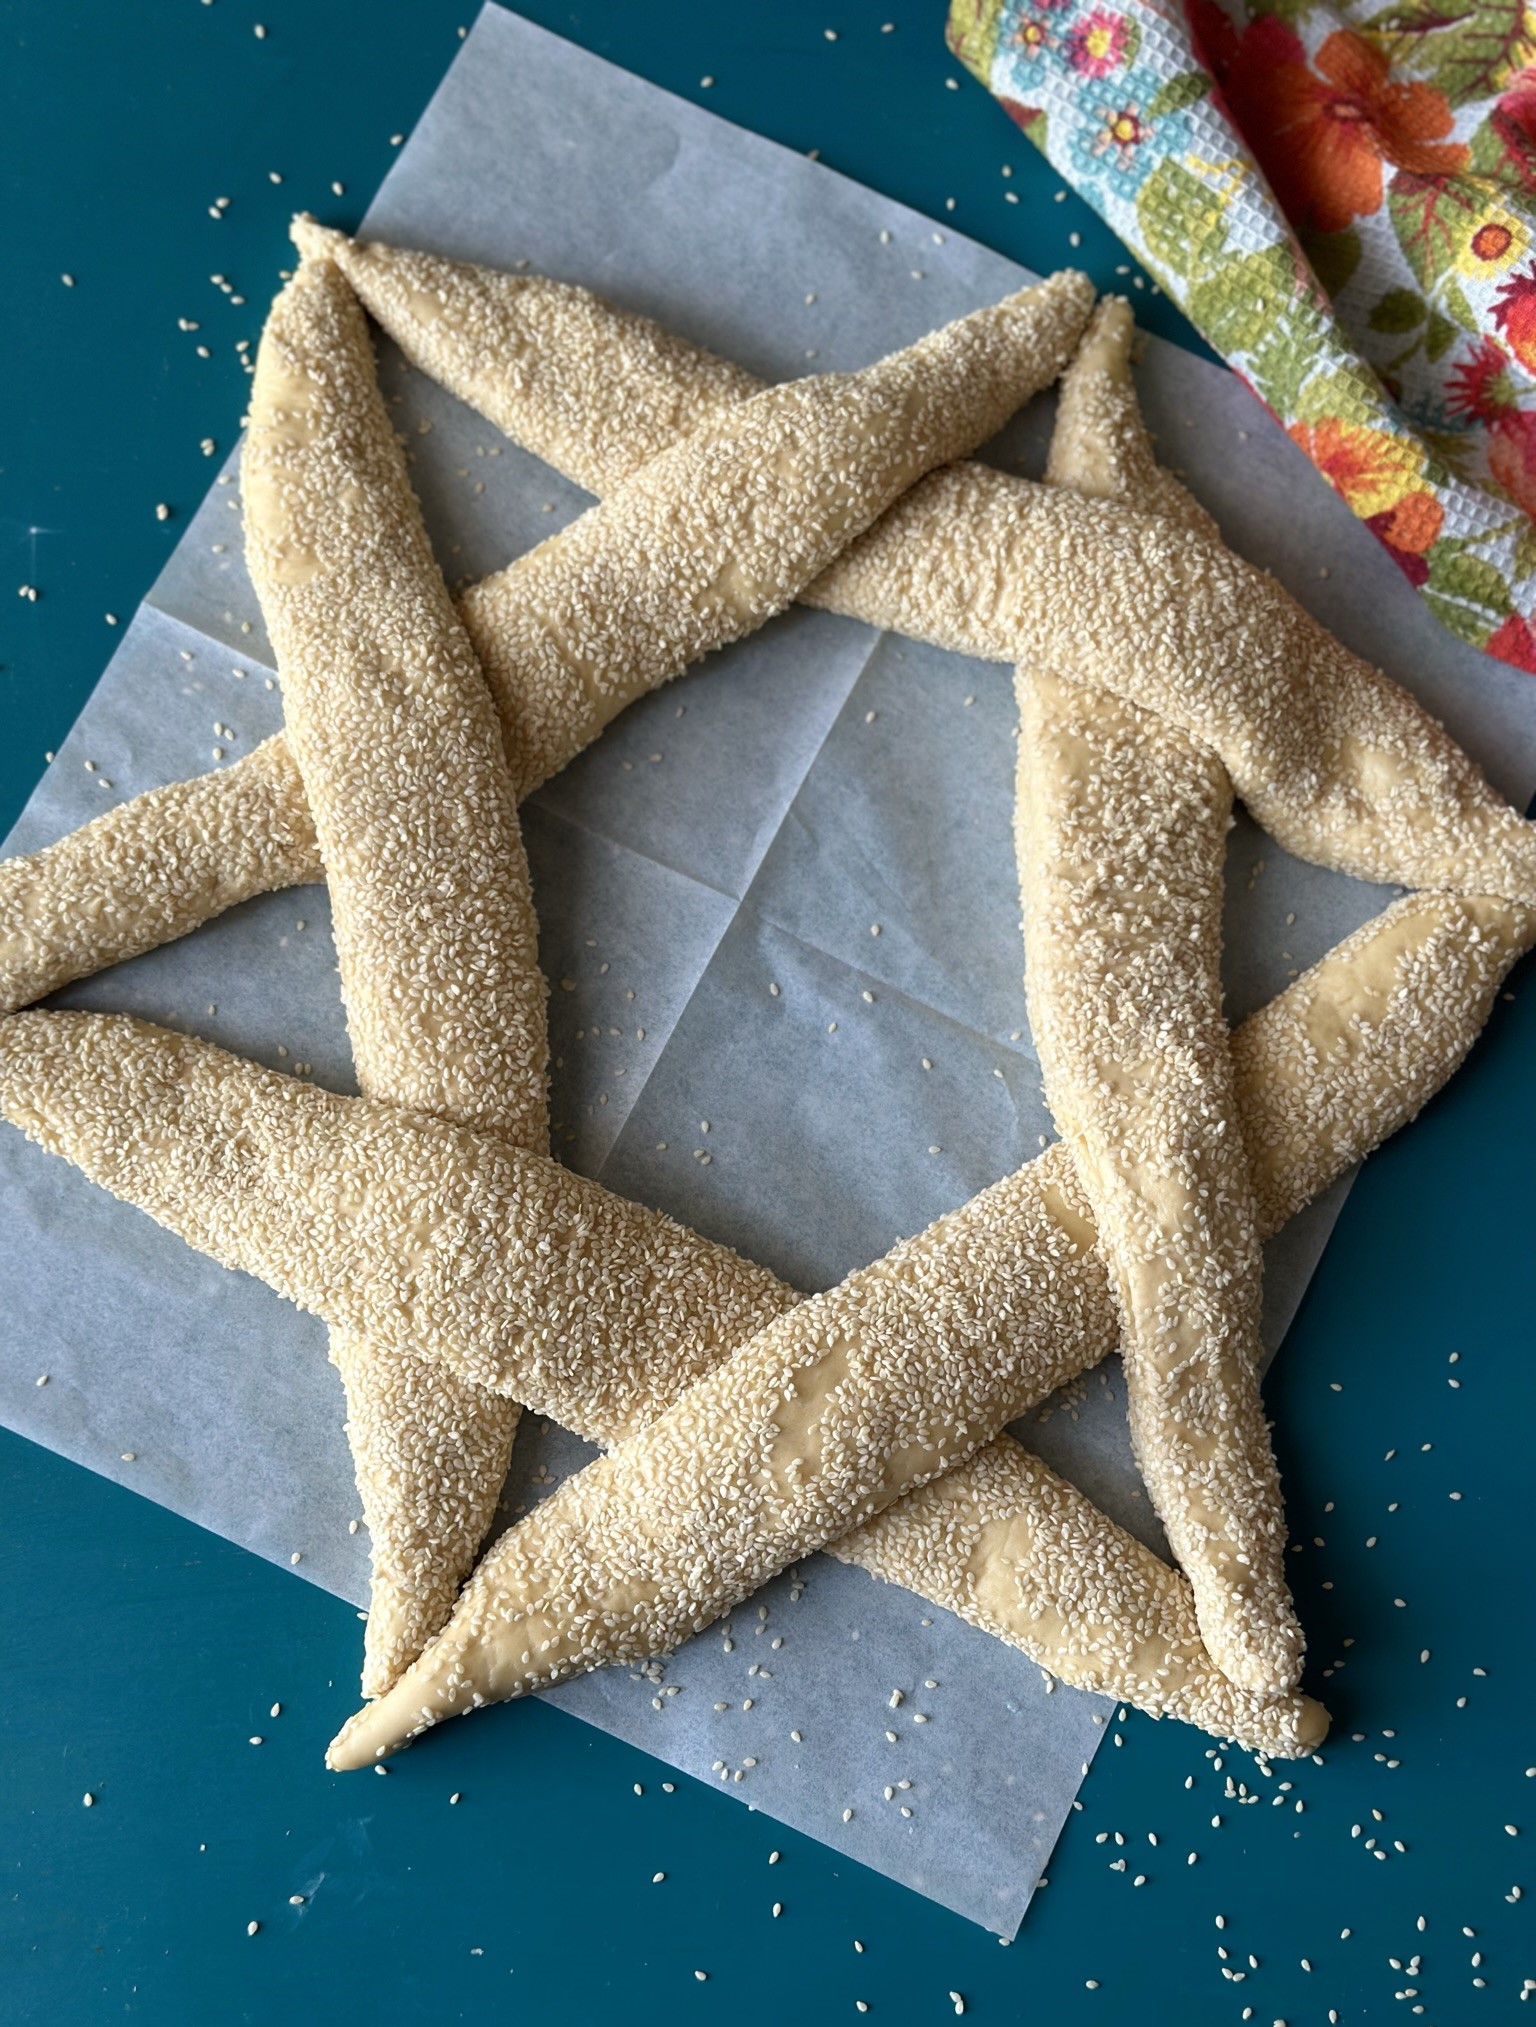 בייגל ירושלמי במילוי גבינות וזיתים בצורת מגן דוד